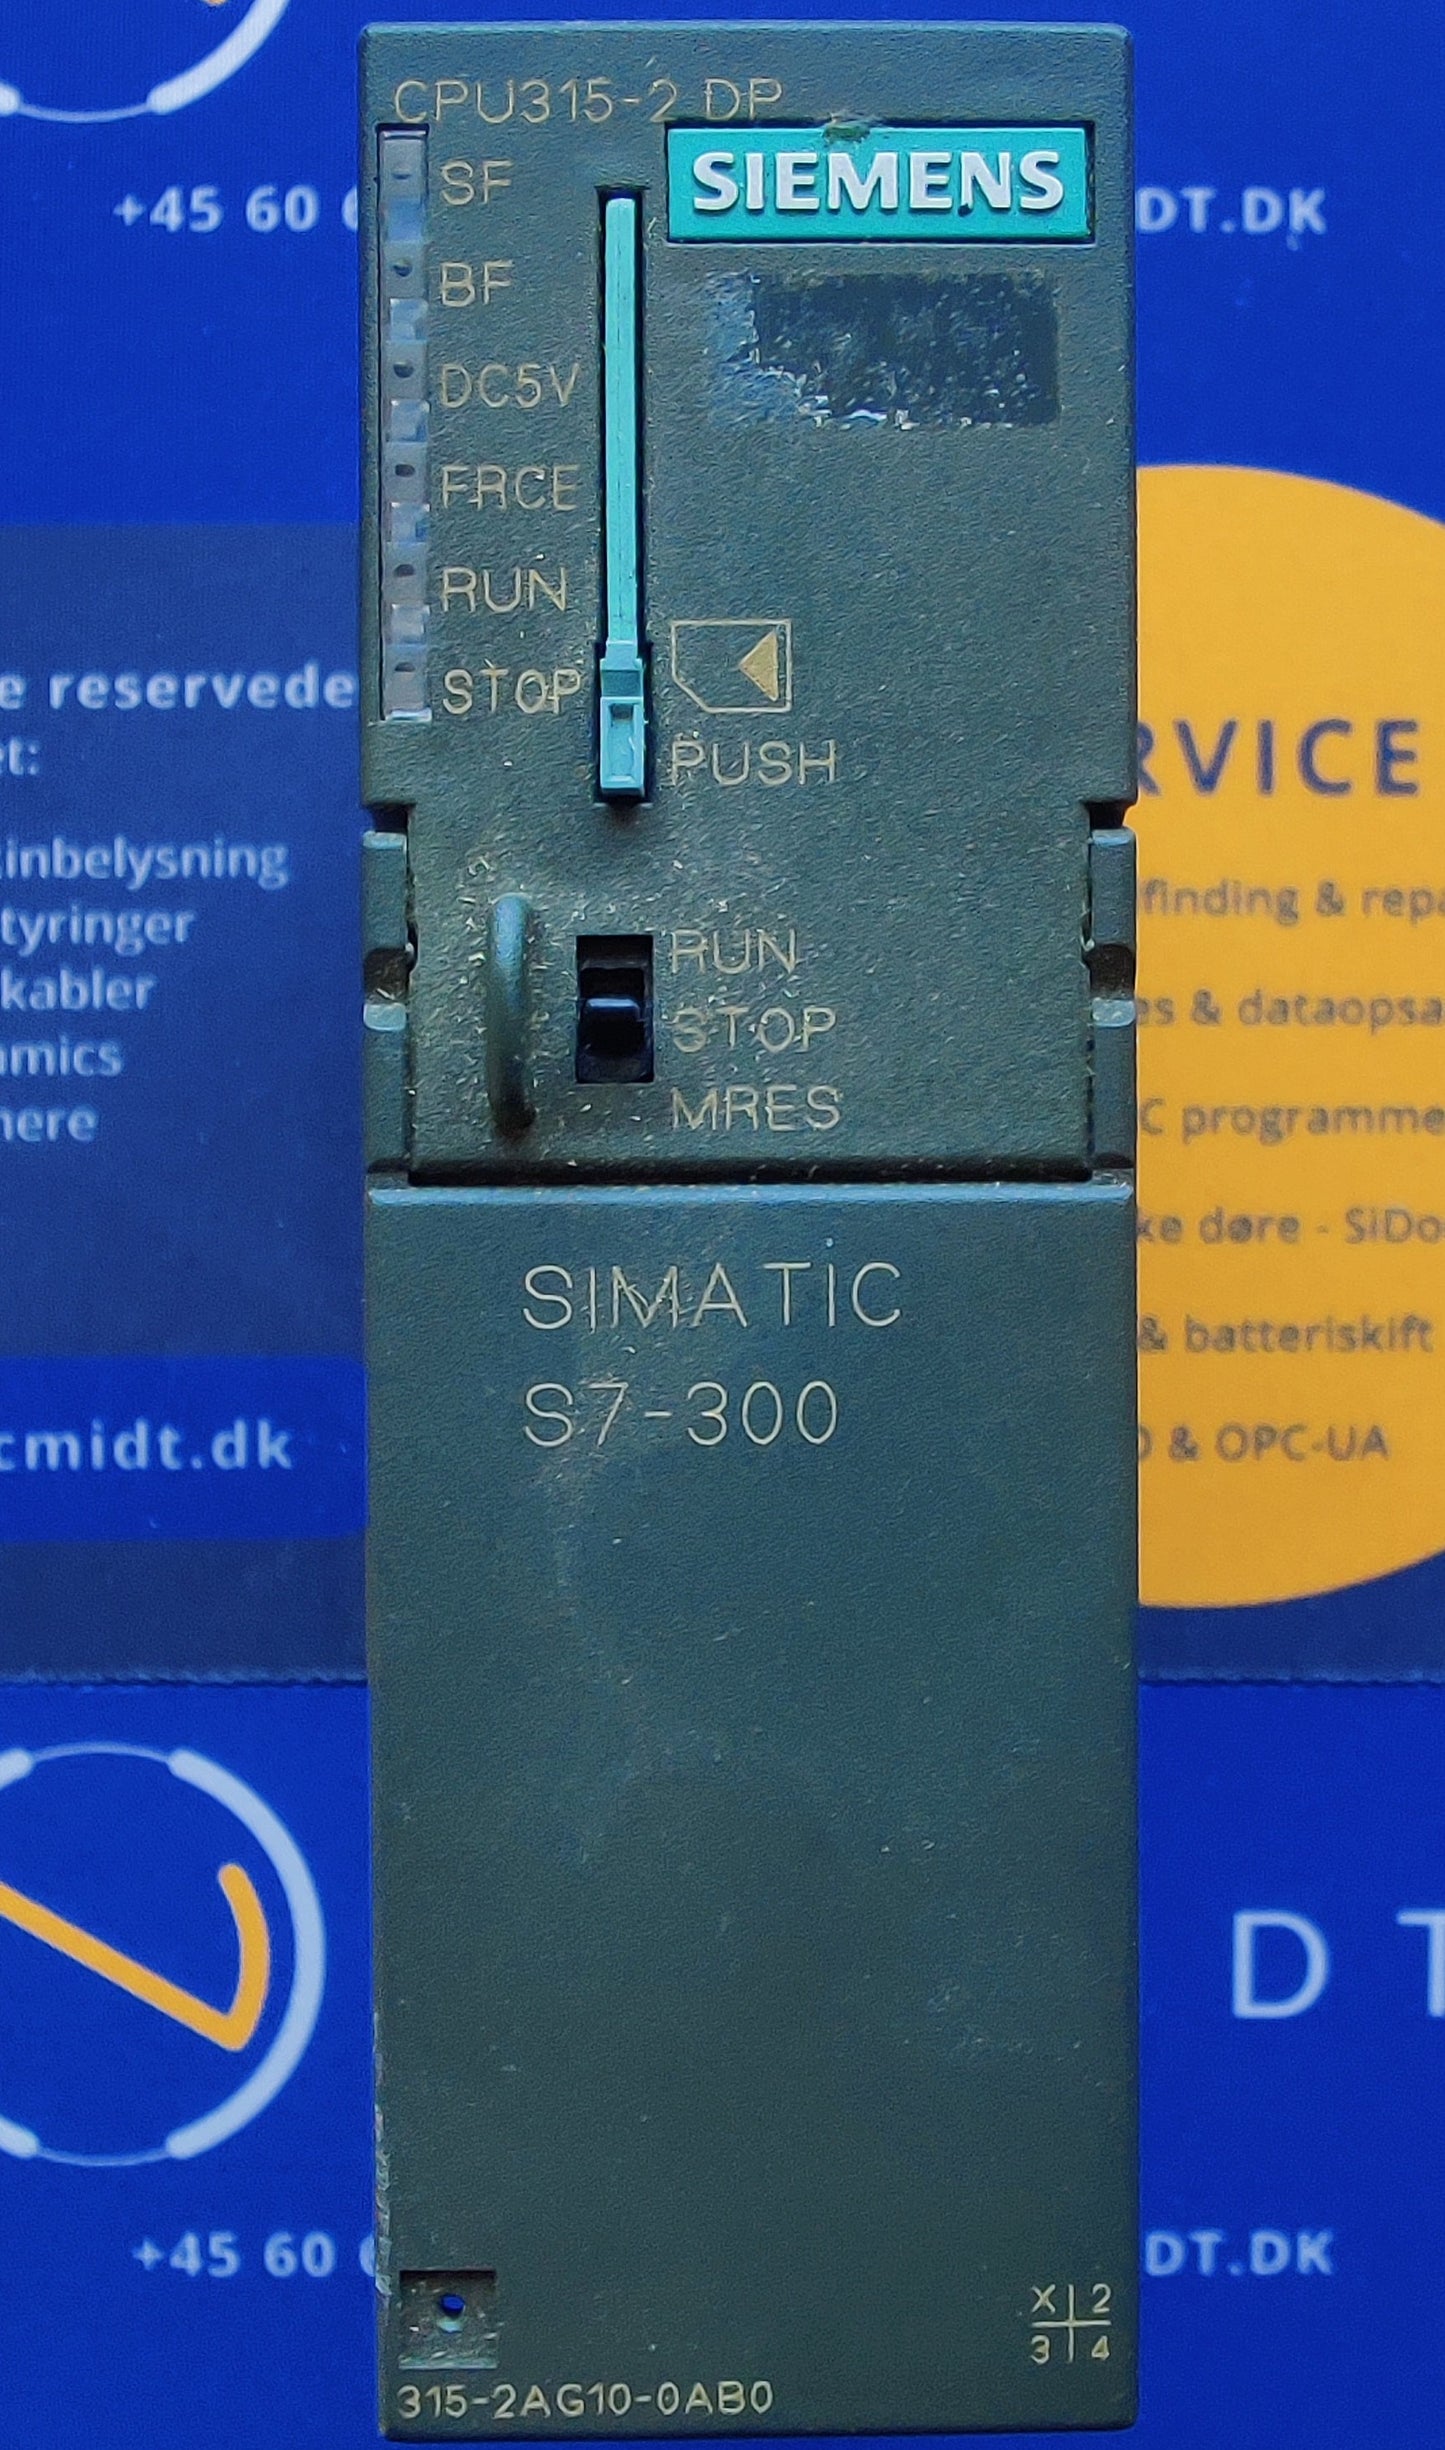 S7-300, CPU315-2 DP (6ES7315-2AG10-0AB0)